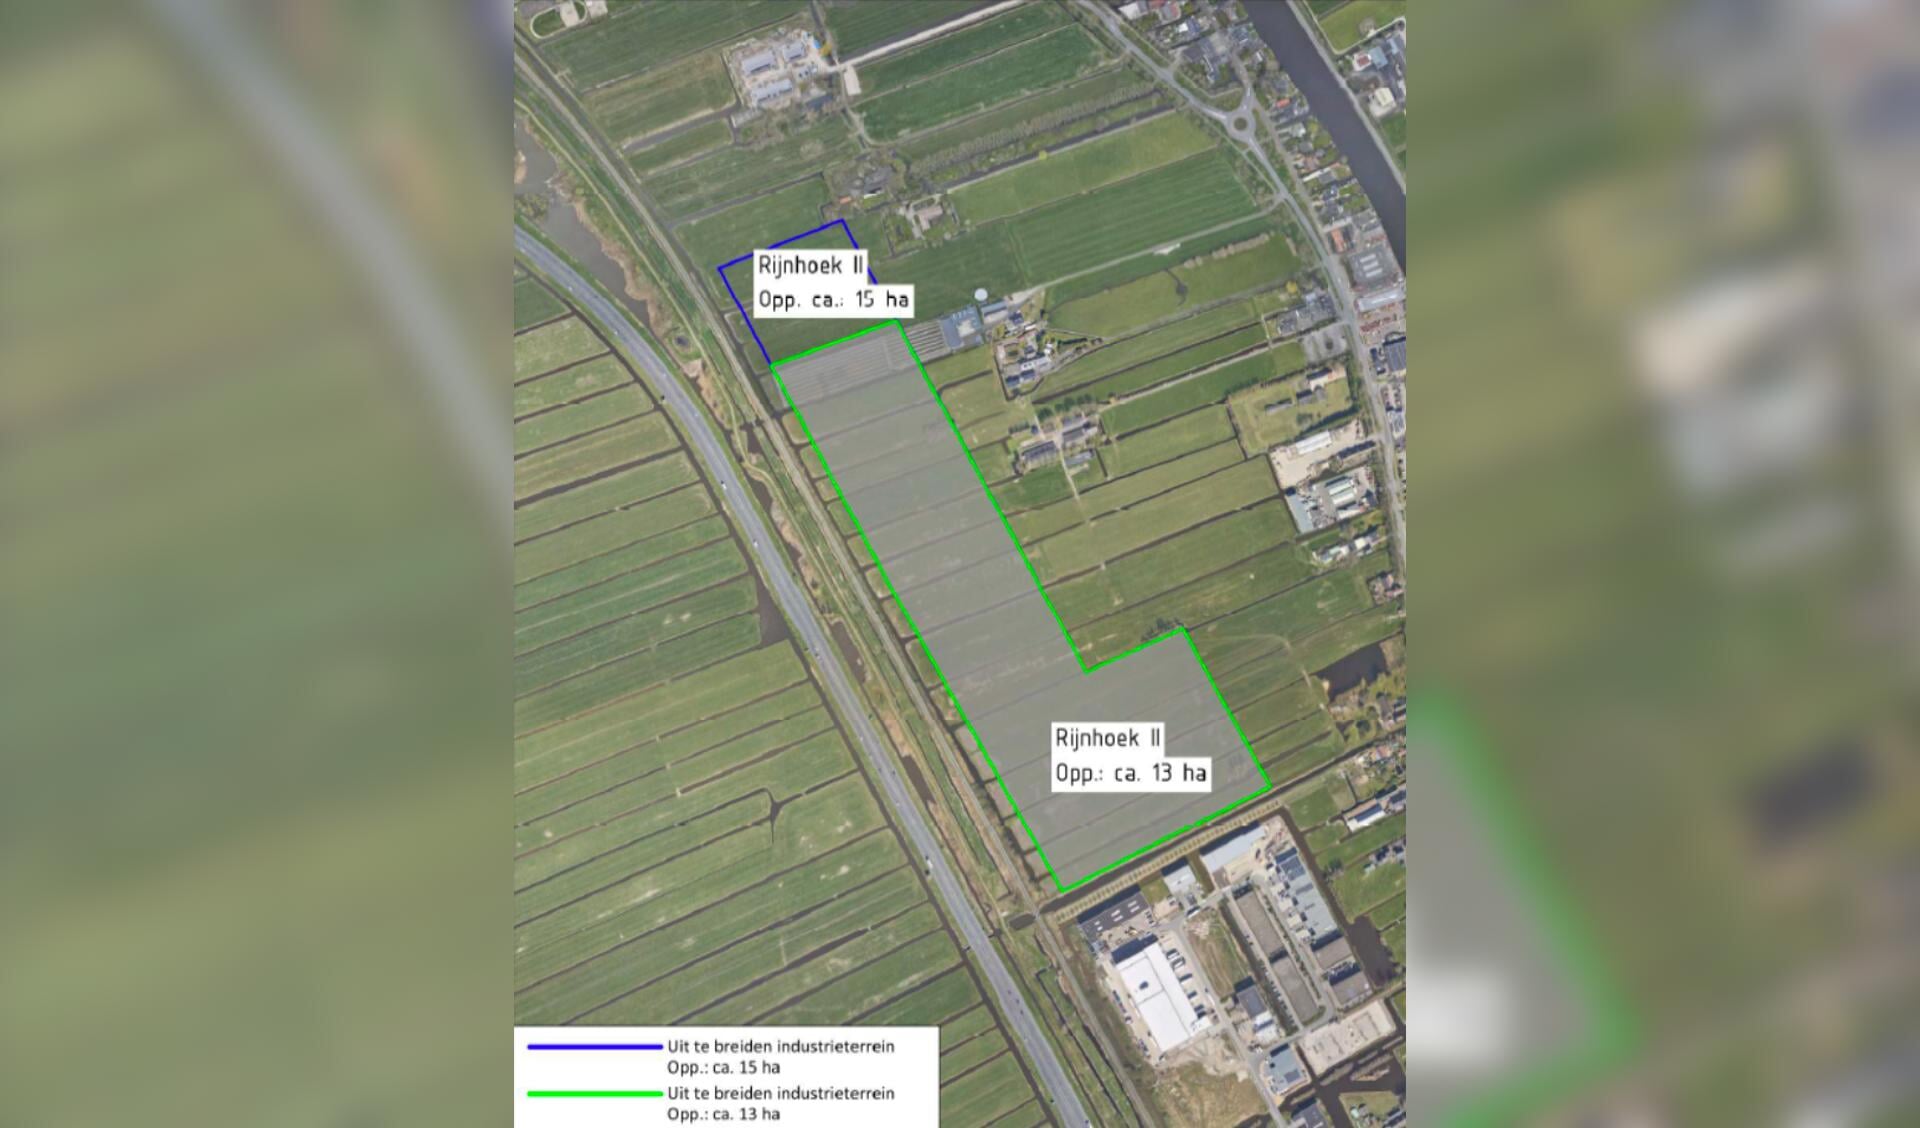 De locatie ‘Rijnhoek II’ in het verlengde van het huidige Rijnhoek lijkt de meest kansrijke locatie voor het nieuwe bedrijventerrein. 